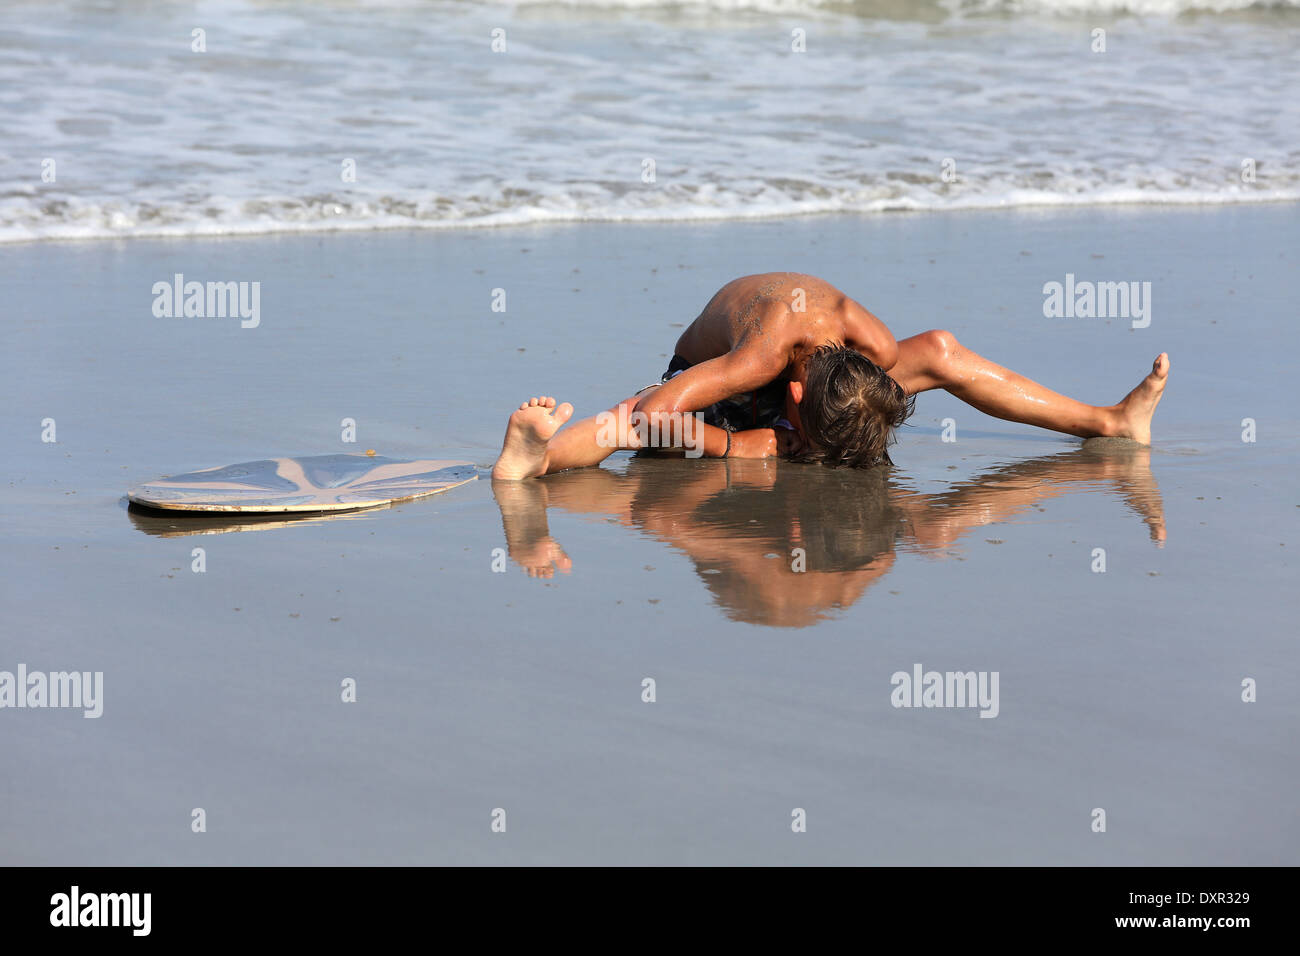 Cocoa Beach, Florida, el muchacho ha caído en la playa de su tabla de surf Foto de stock